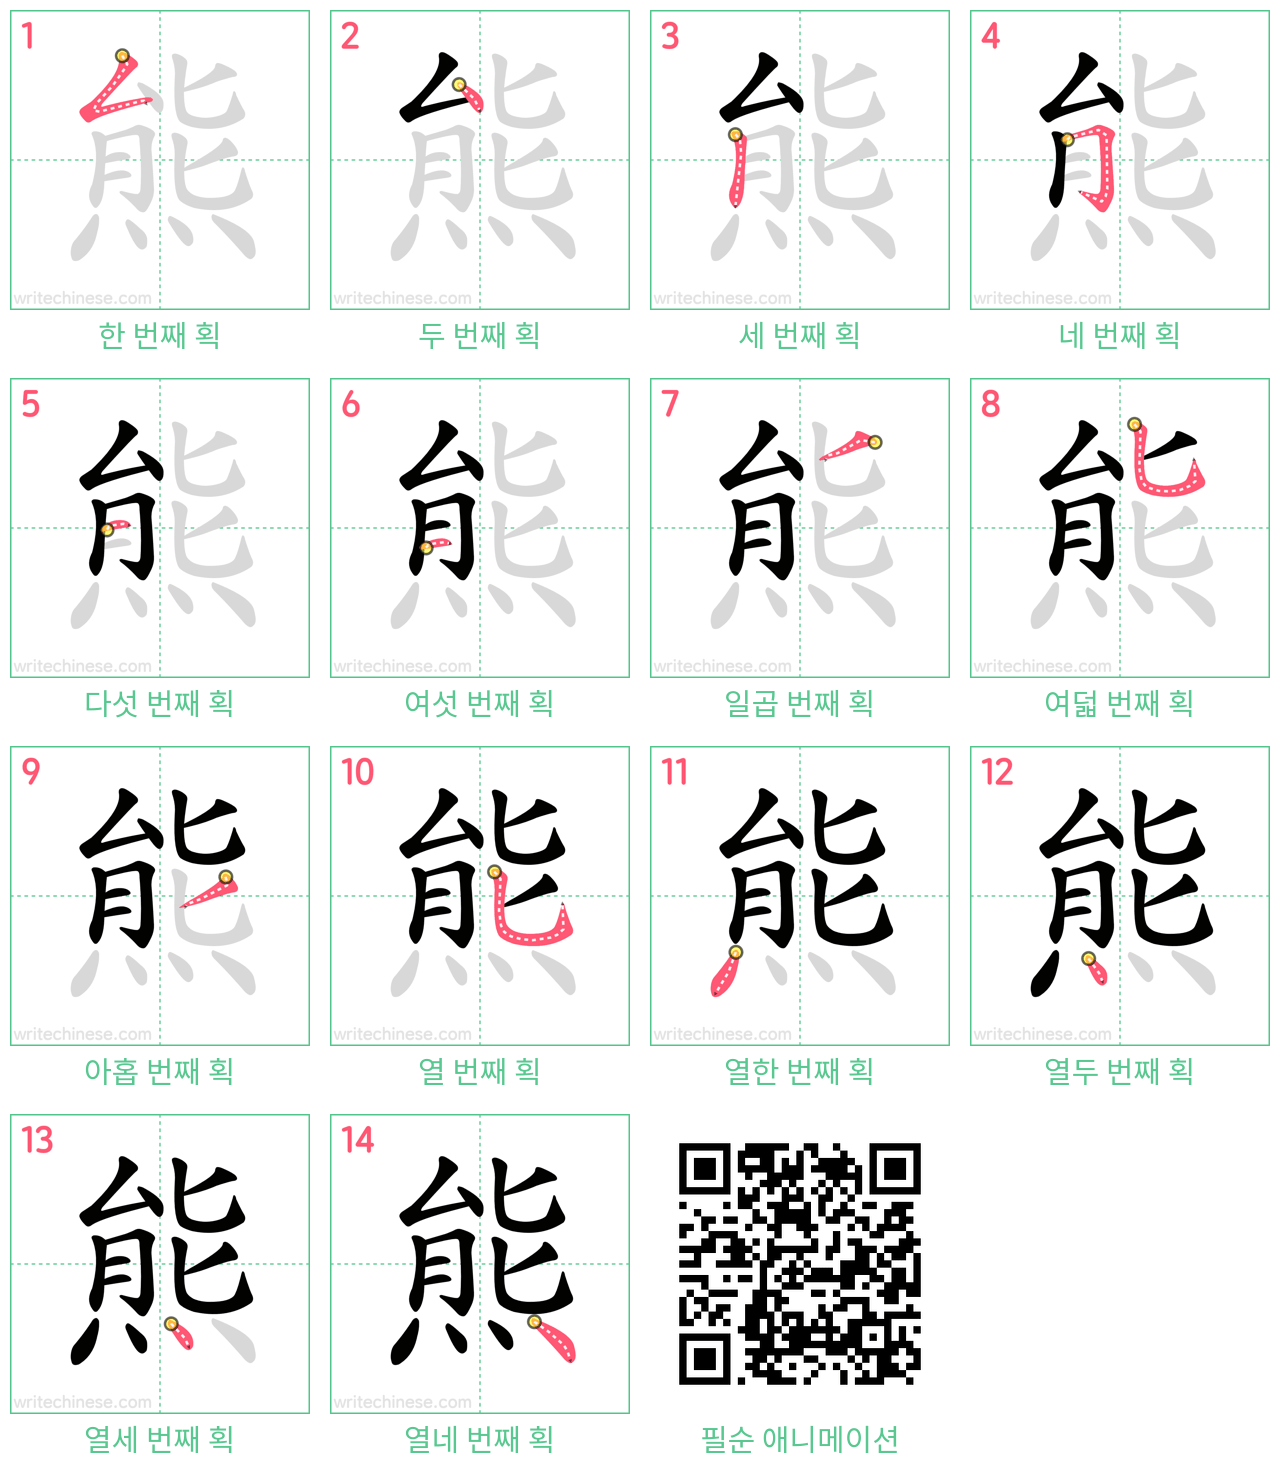 熊 step-by-step stroke order diagrams